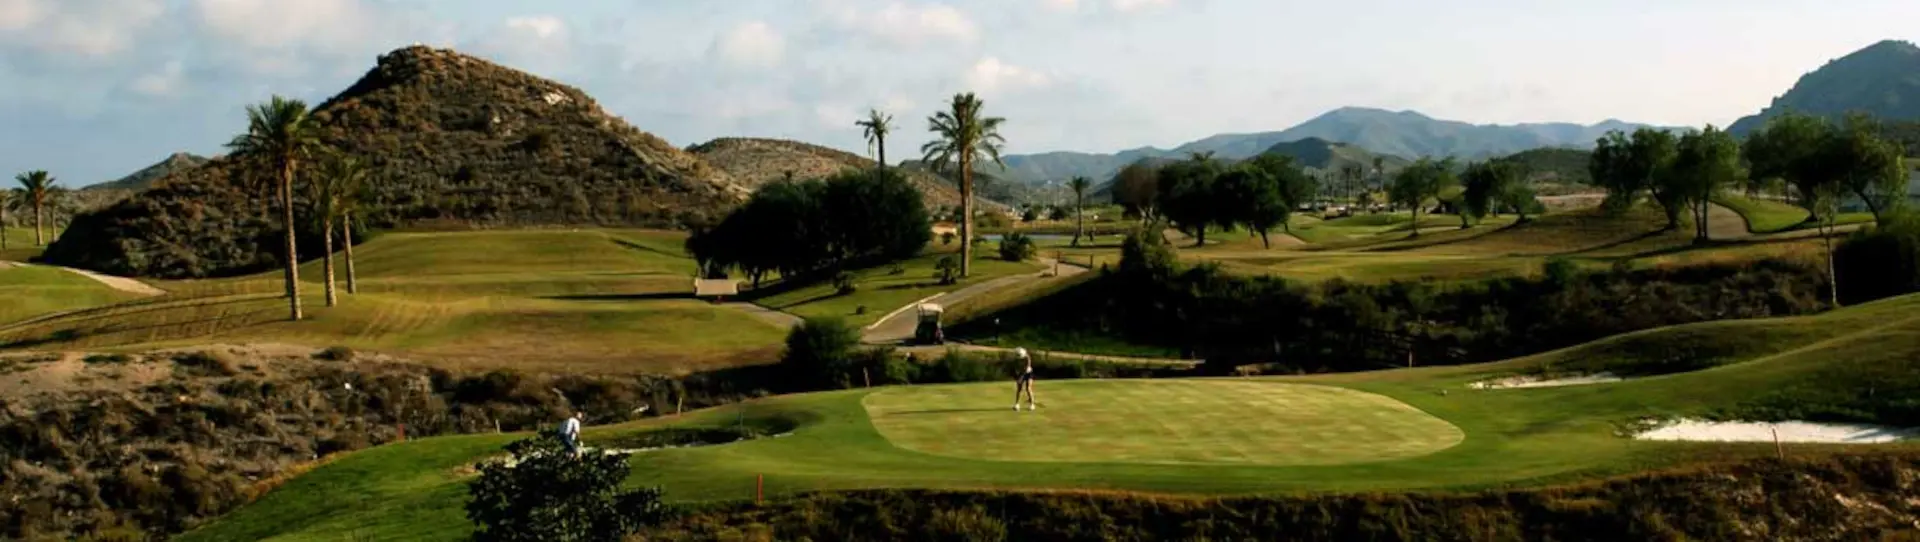 Spain golf courses - Aguilon Golf Course - Photo 2